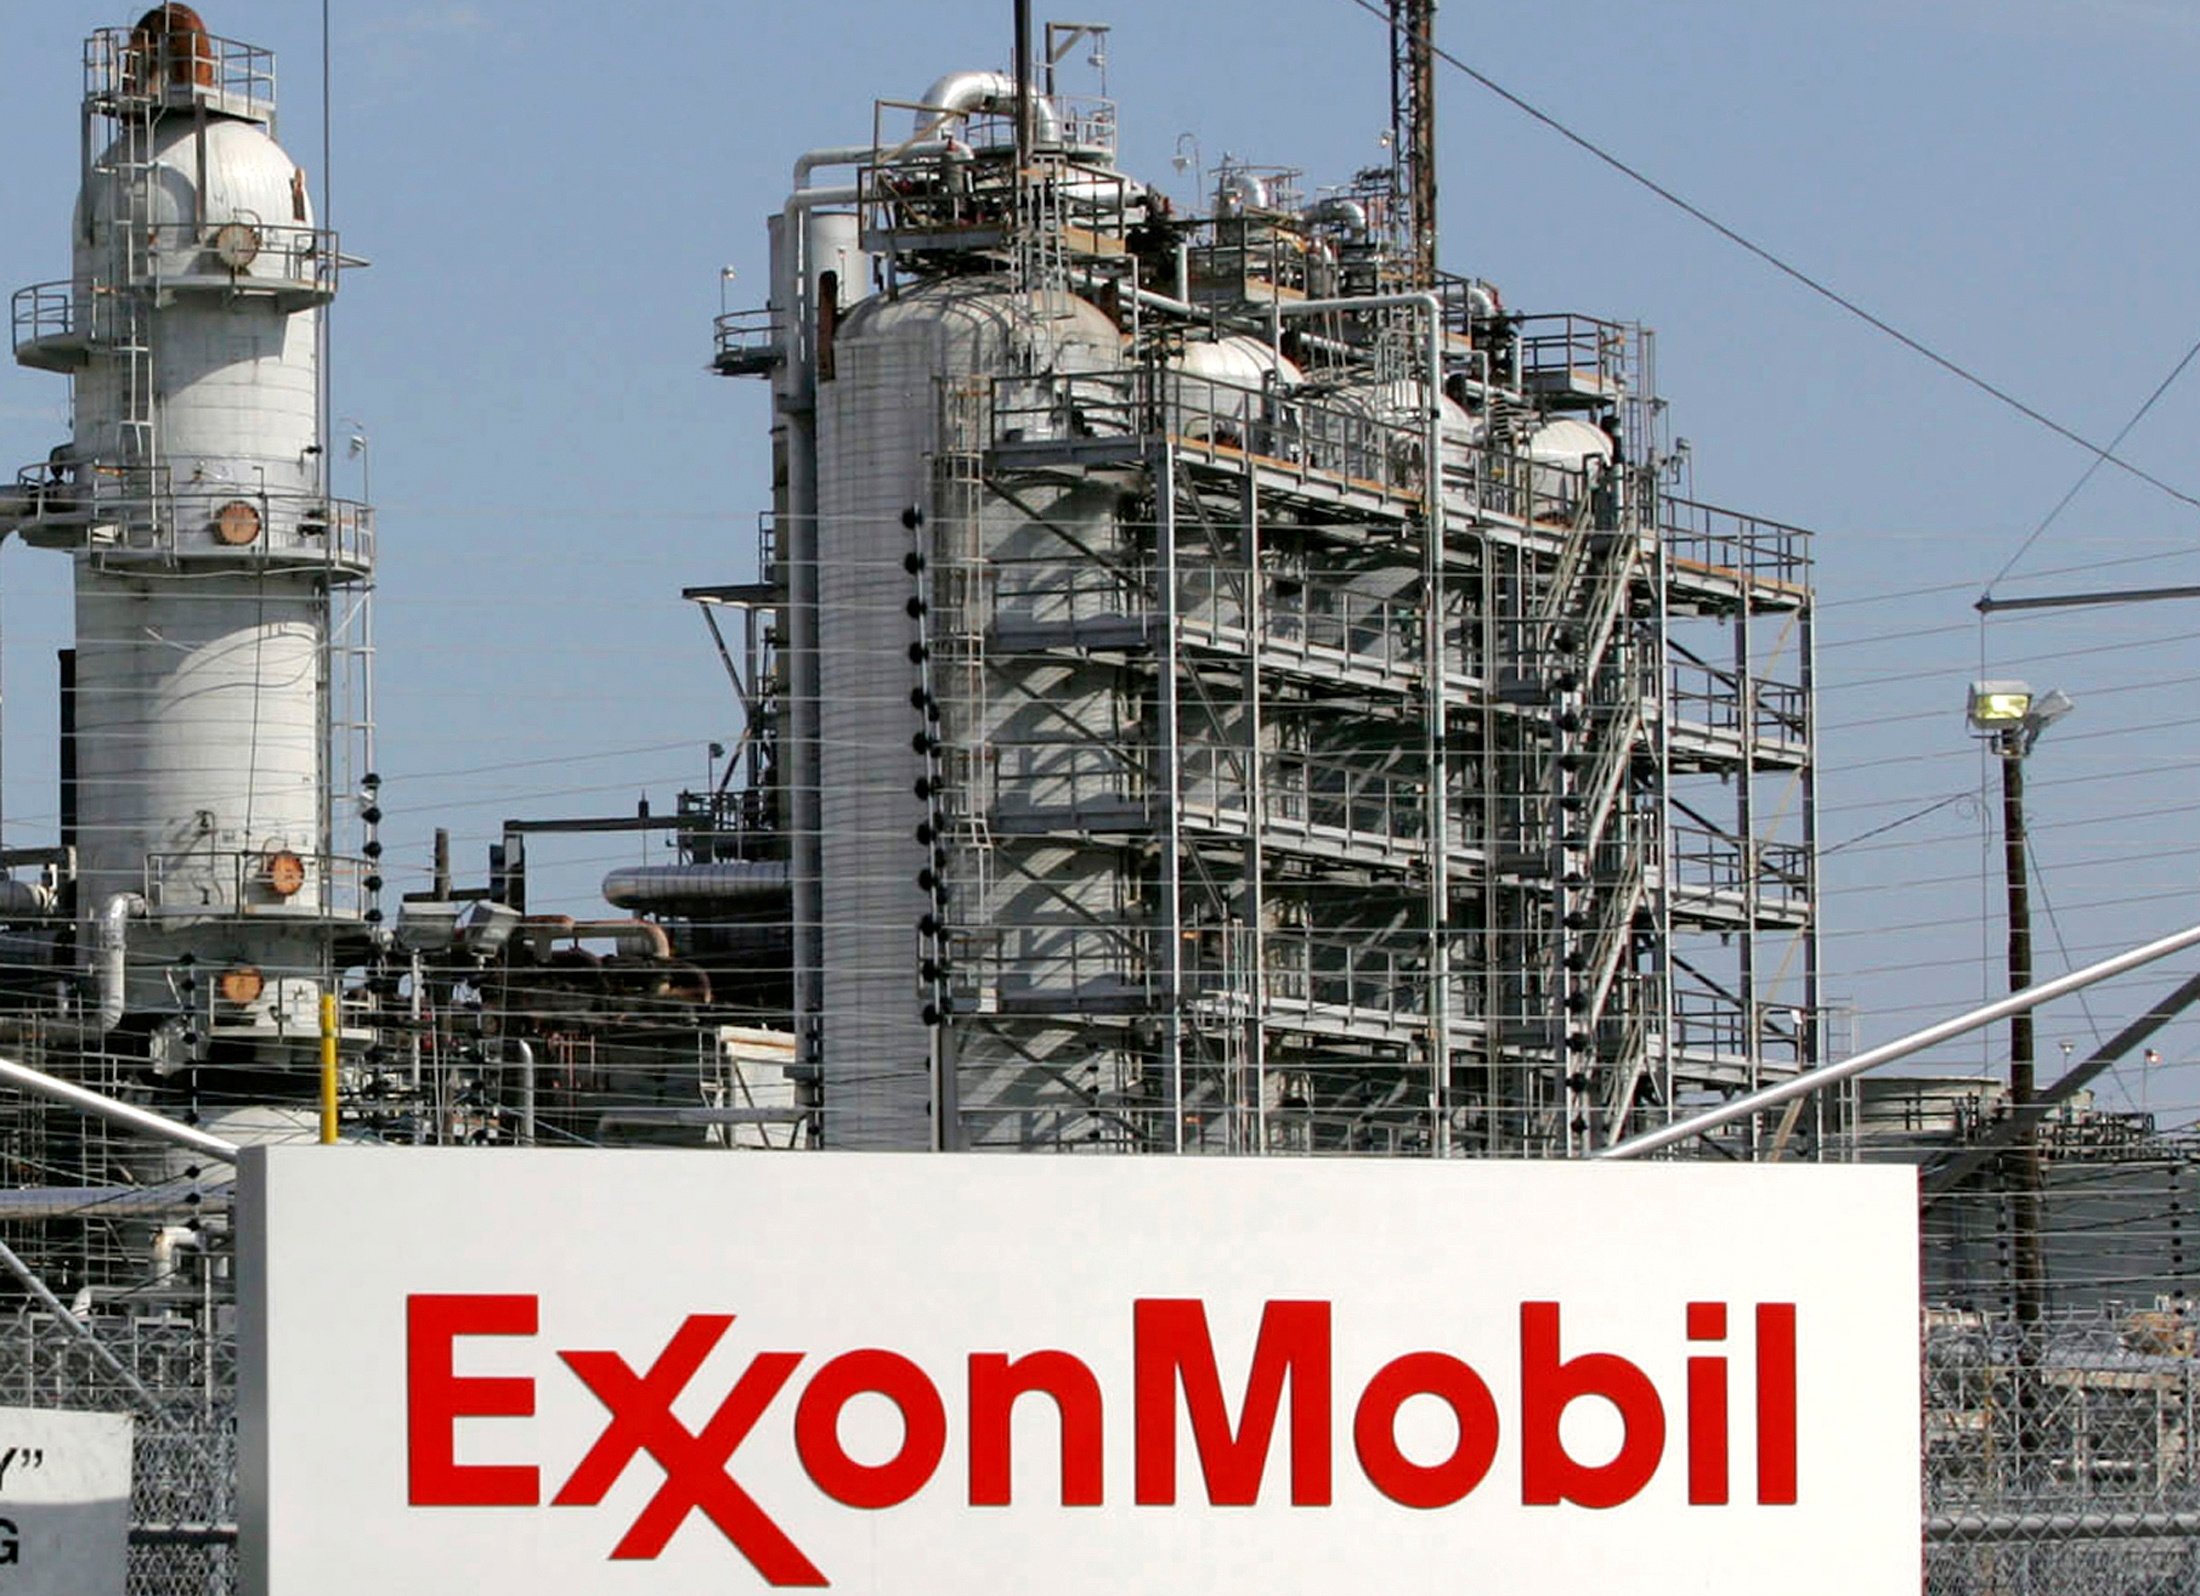  وقعت شركة ExxonMobil على ثلاثة تراخيص للتنقيب عن النفط والغاز في موريتانيا.